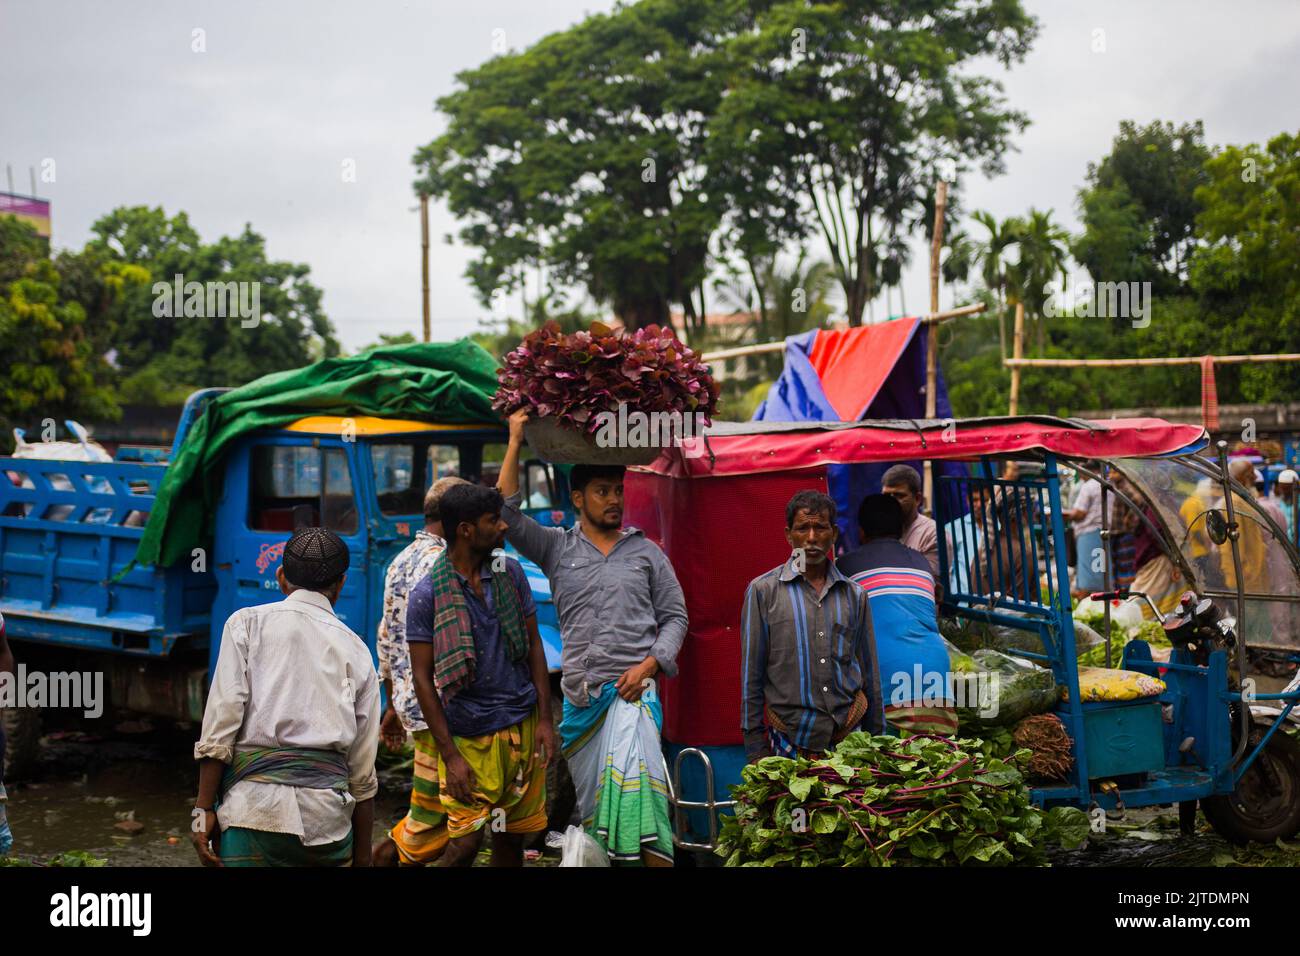 Un paysage d'un marché de légumes rural à Kalatia, près de Dhaka. Les agriculteurs vendent leurs légumes frais aux commerçants, c'est-à-dire la production de légumes frais. Banque D'Images